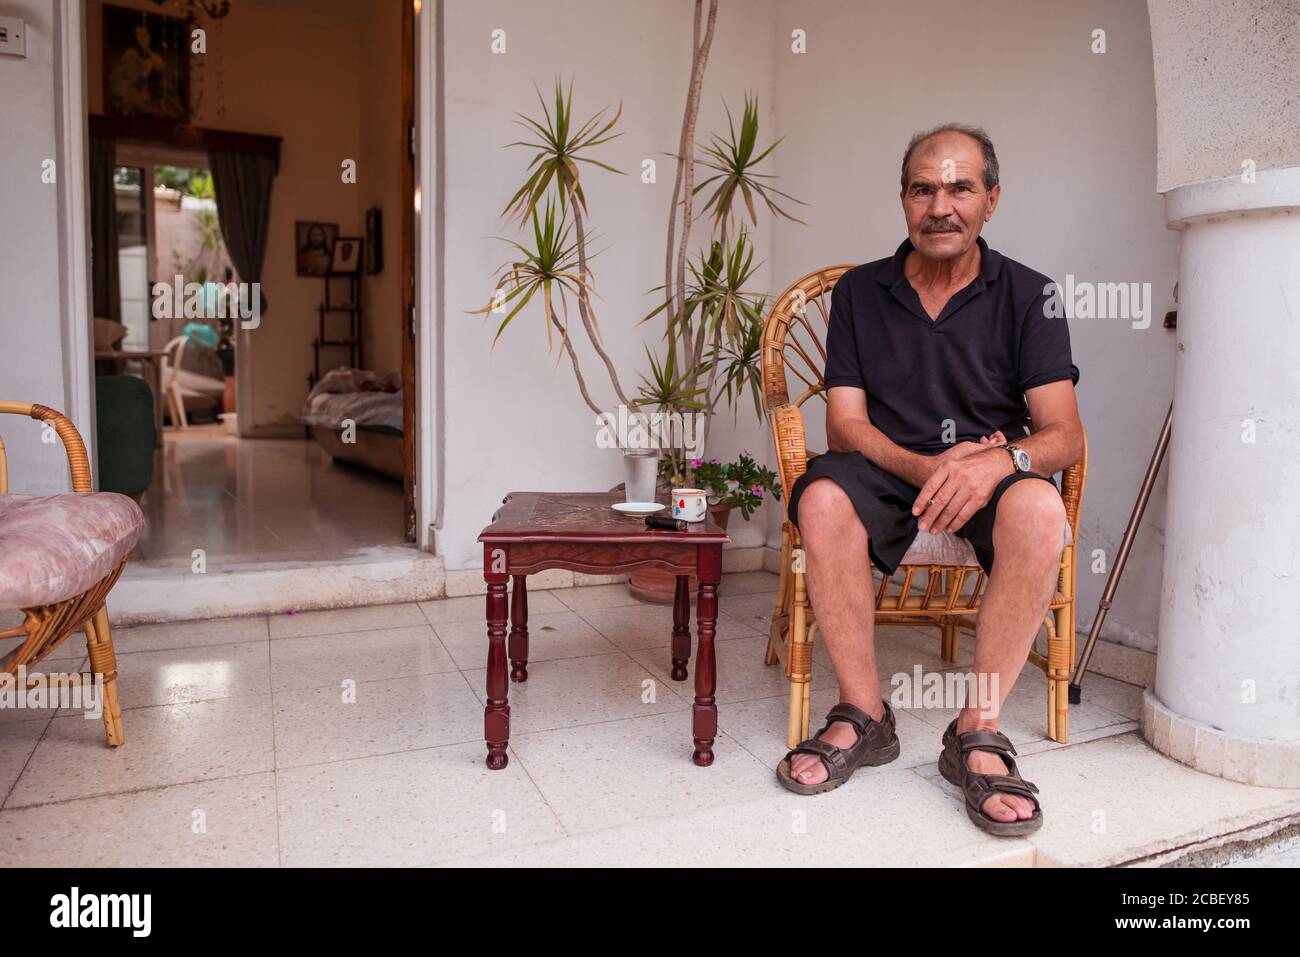 Larnaca / Chypre - 15 août 2019 : portrait d'un homme chypriote senior souriant assis sur le porche de sa maison Banque D'Images